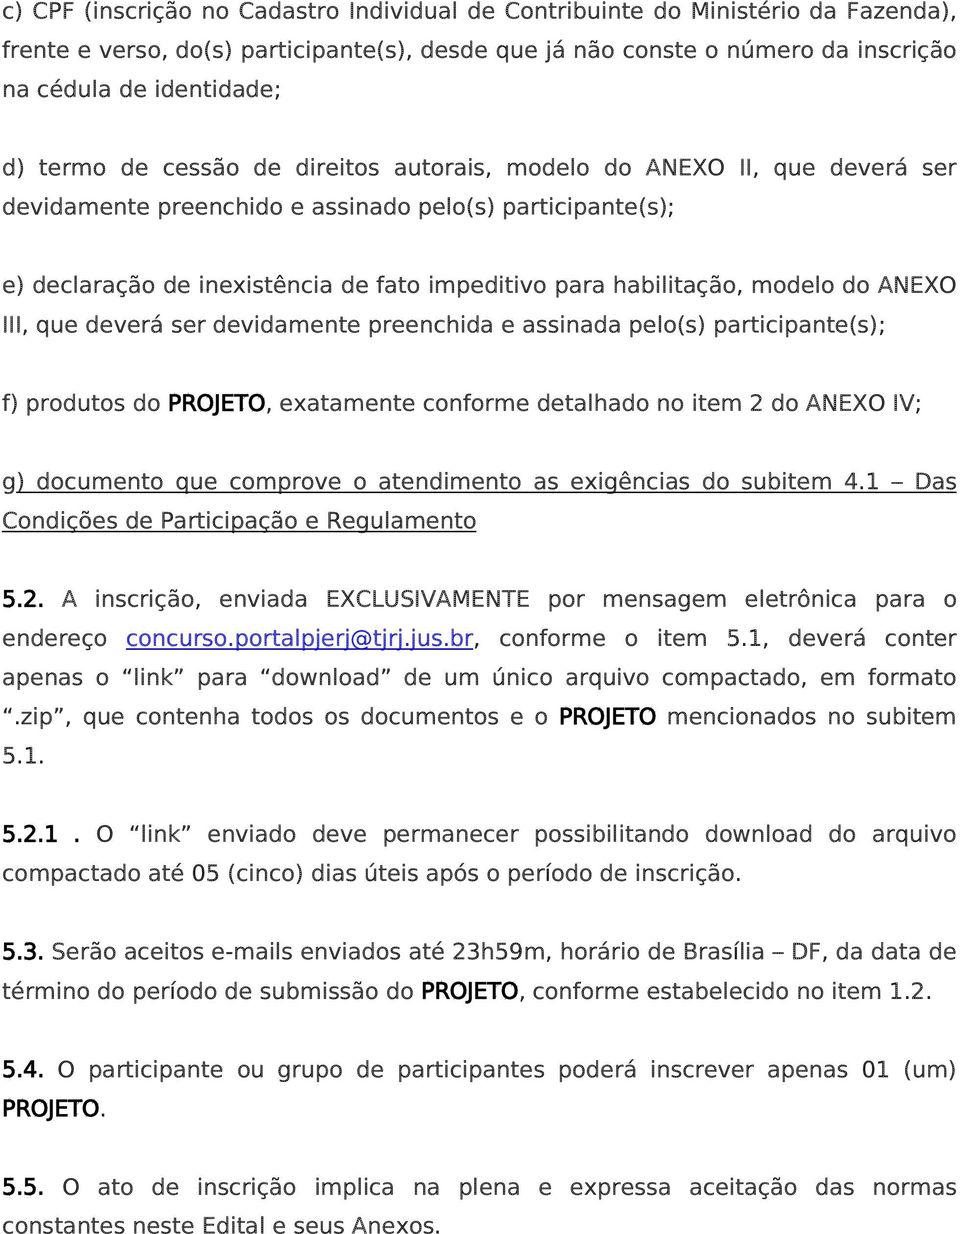 modelo do ANEXO III, que deverá ser devidamente preenchida e assinada pelo(s) participante(s); f) produtos do PROJETO, exatamente conforme detalhado no item 2 do ANEXO IV; g) documento que comprove o